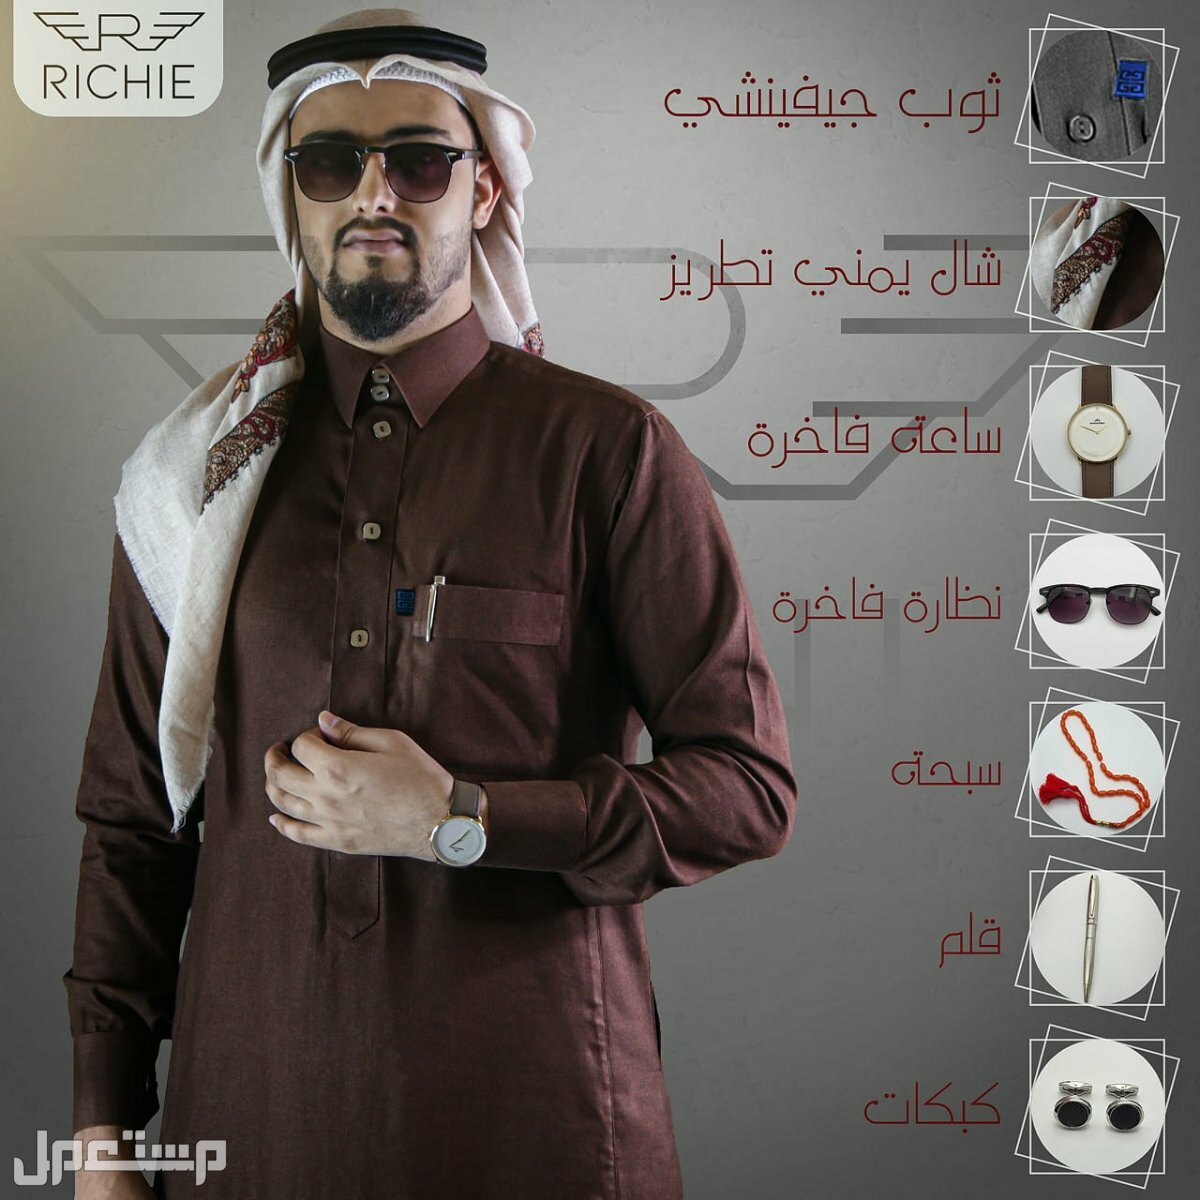 ثوب جفنشي مع شال يمني فاخر بملحقات مميزه